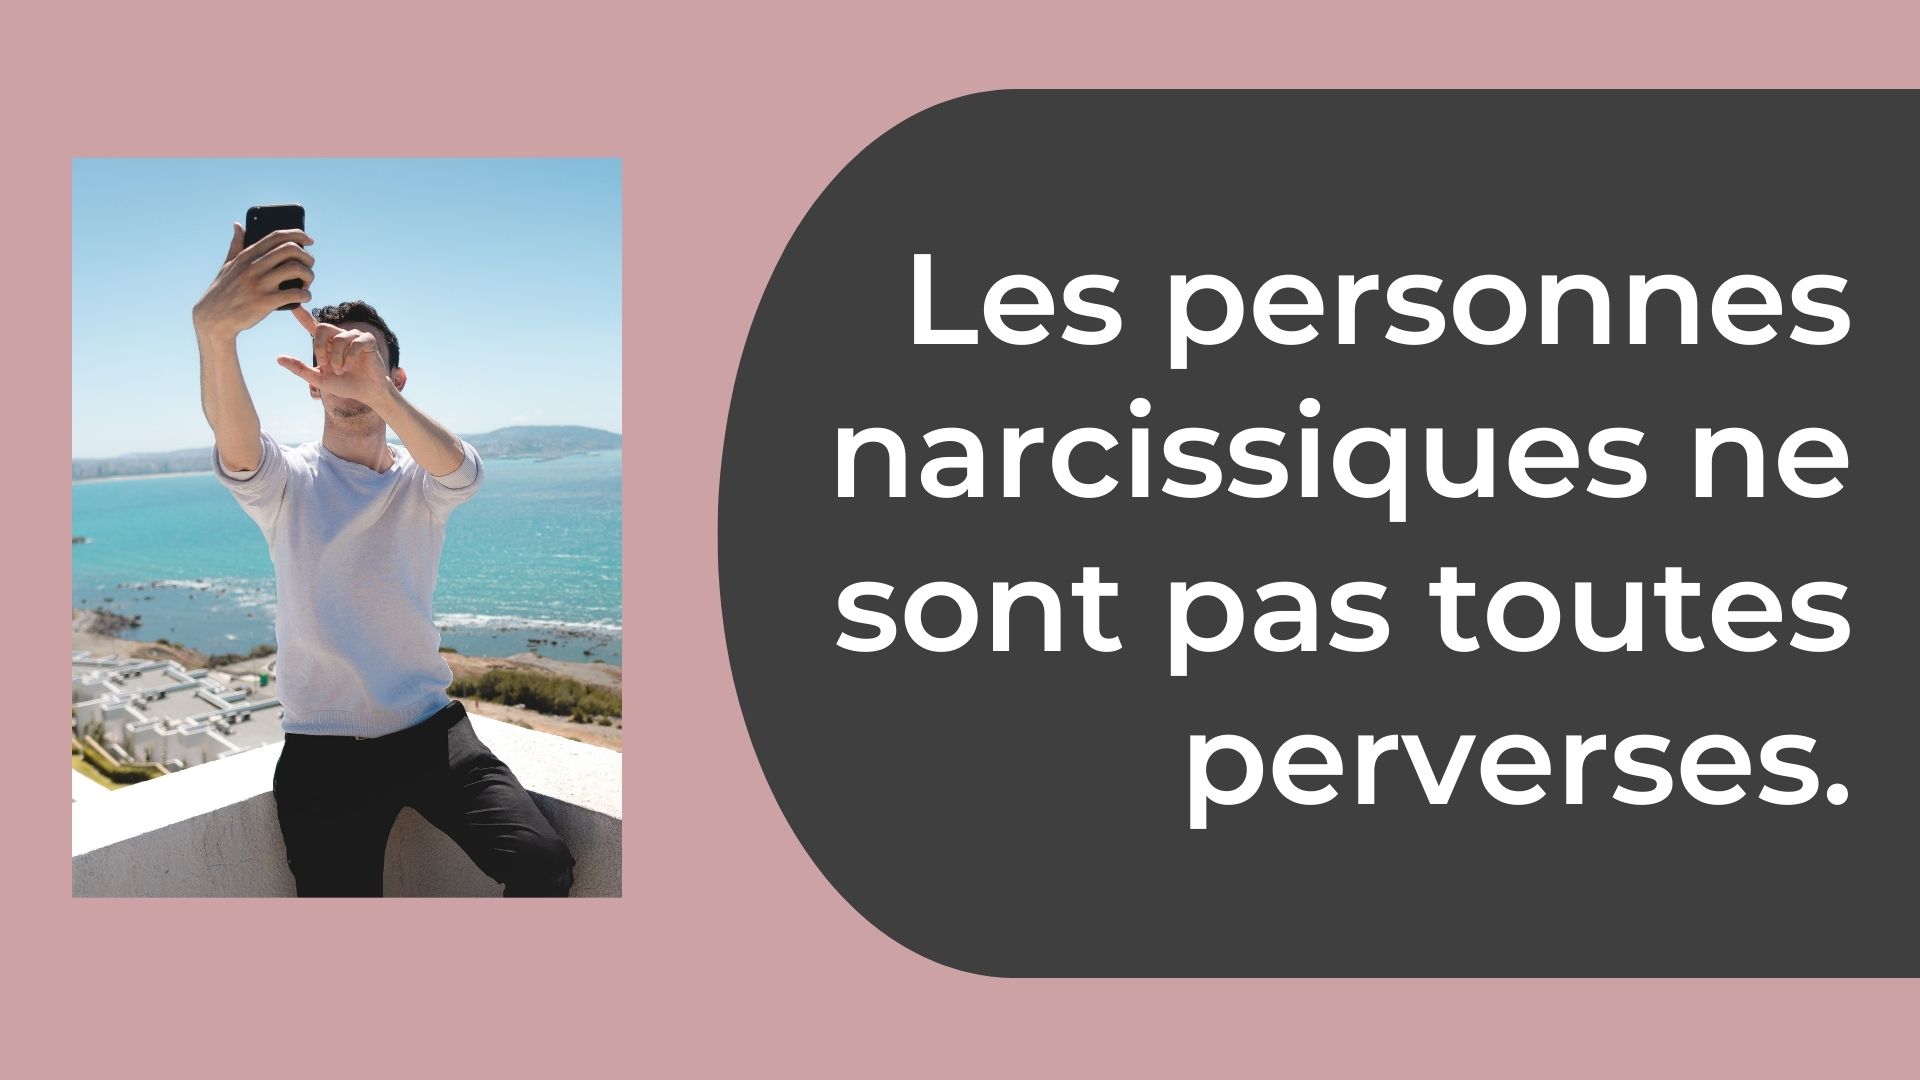 Les personnes narcissiques ne sont pas toutes perverses.